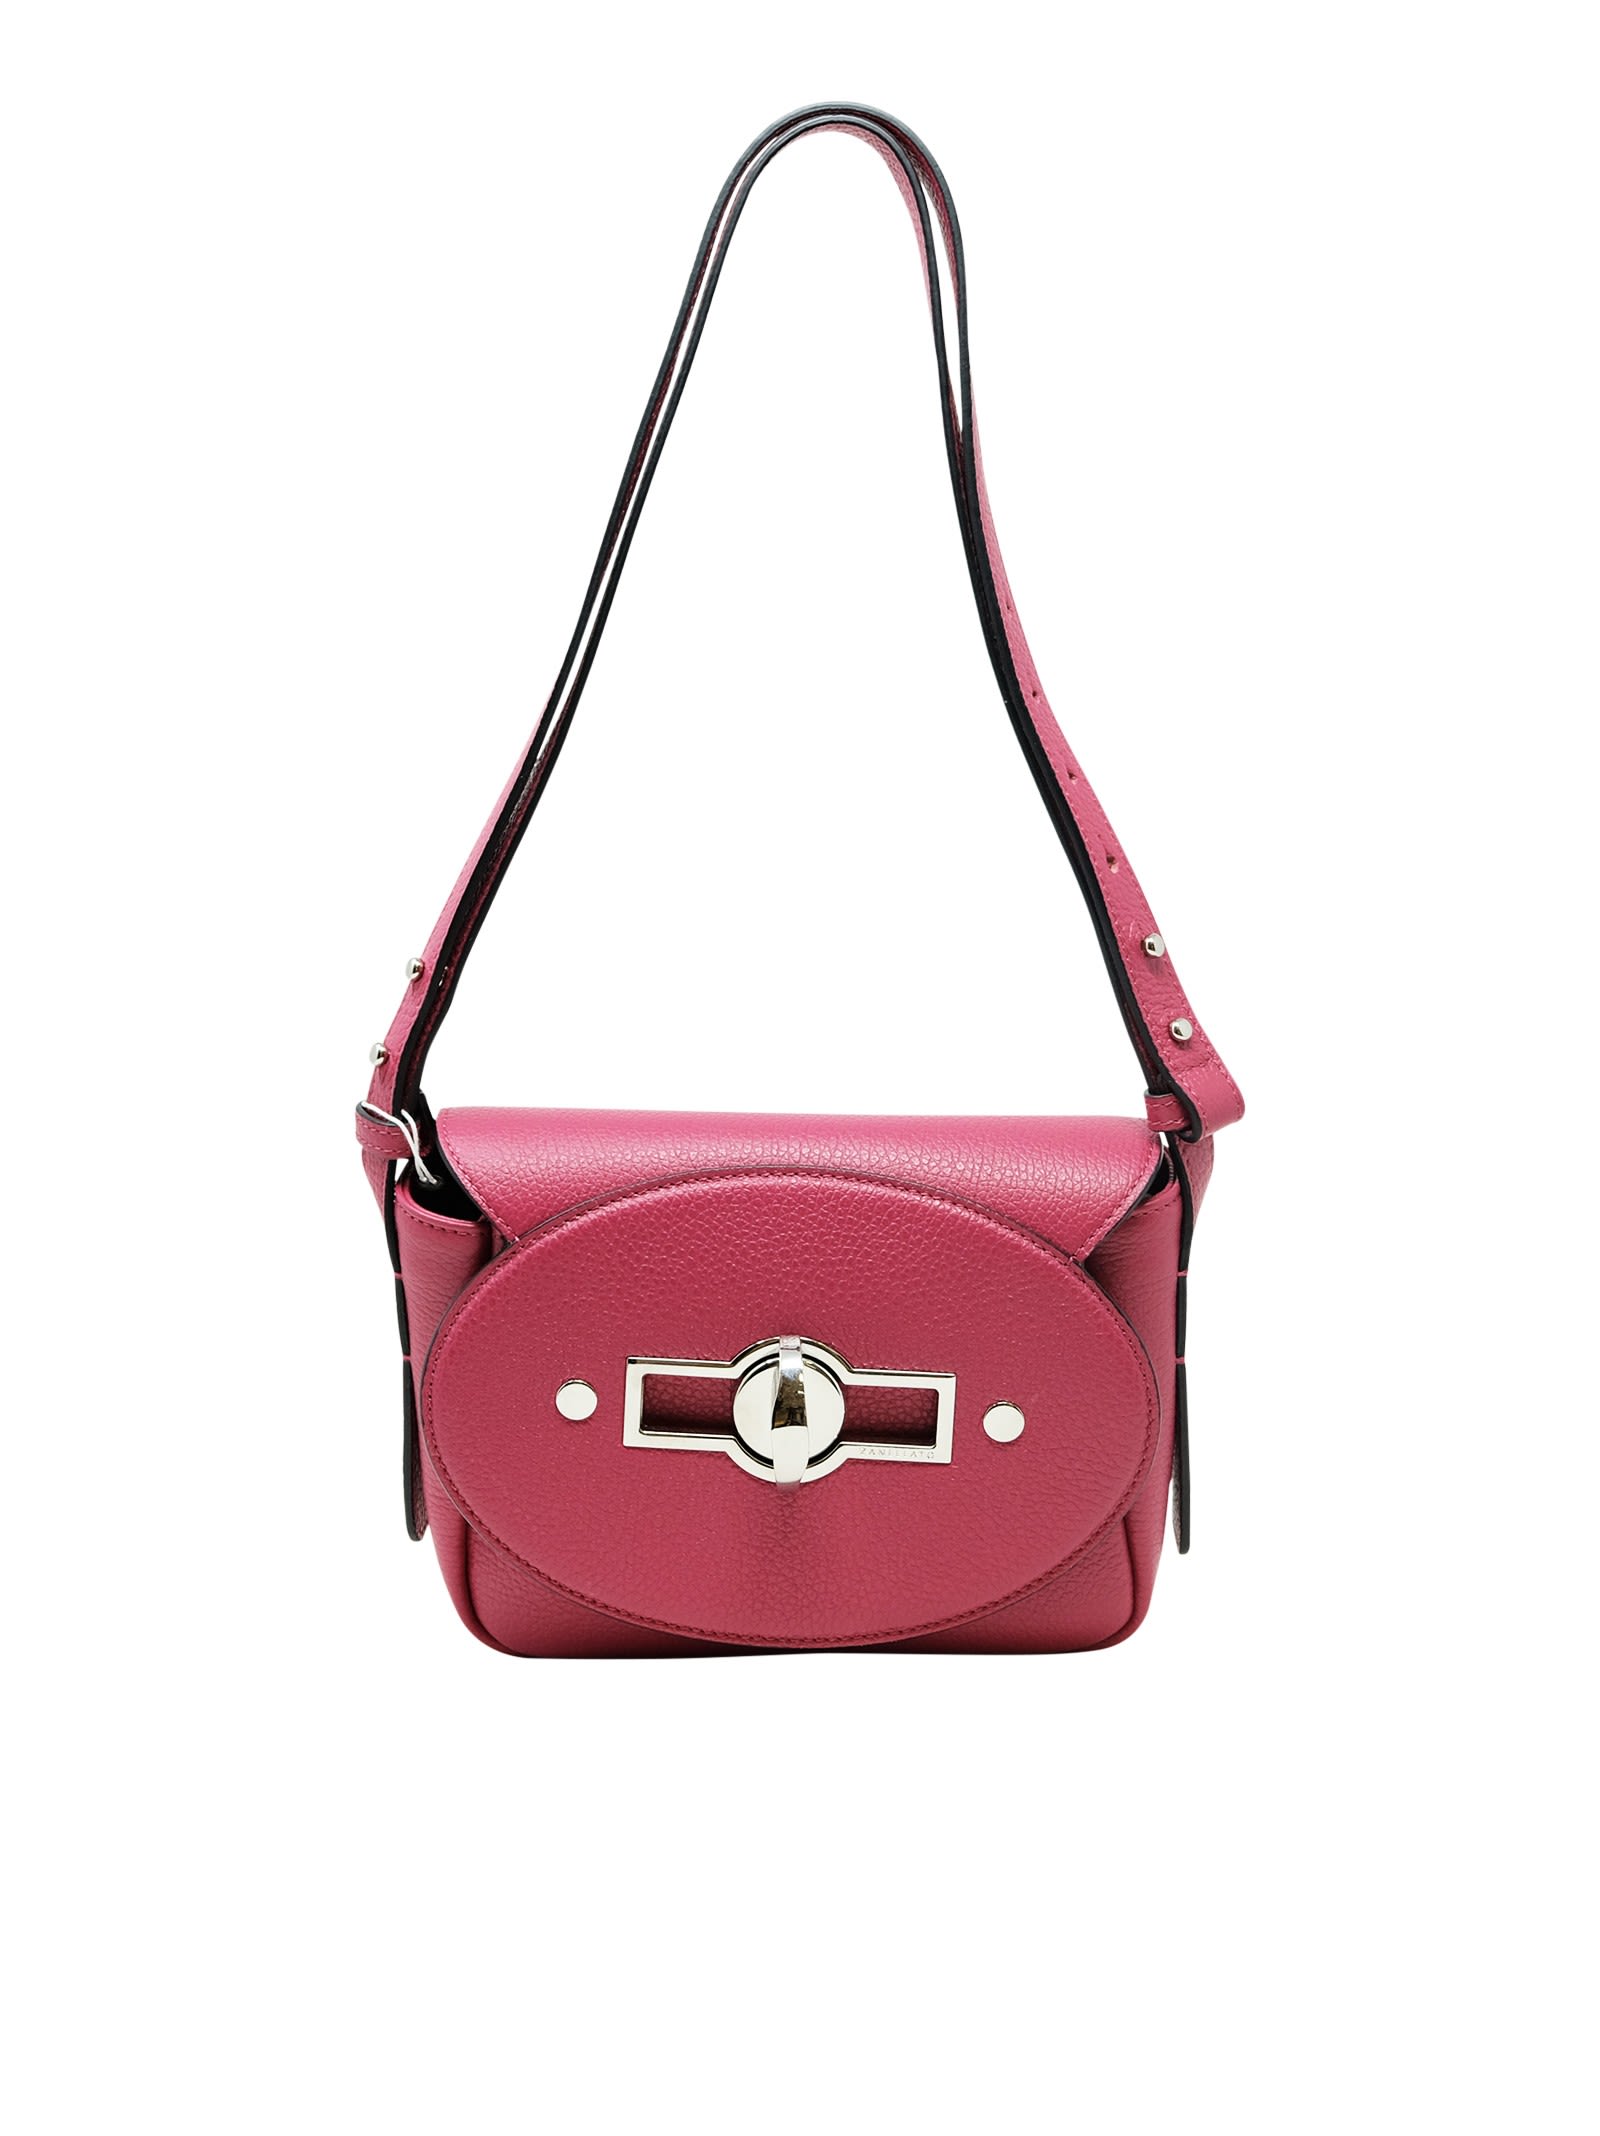 Zanellato Cyclamine Tina Daily S Leather Handbag